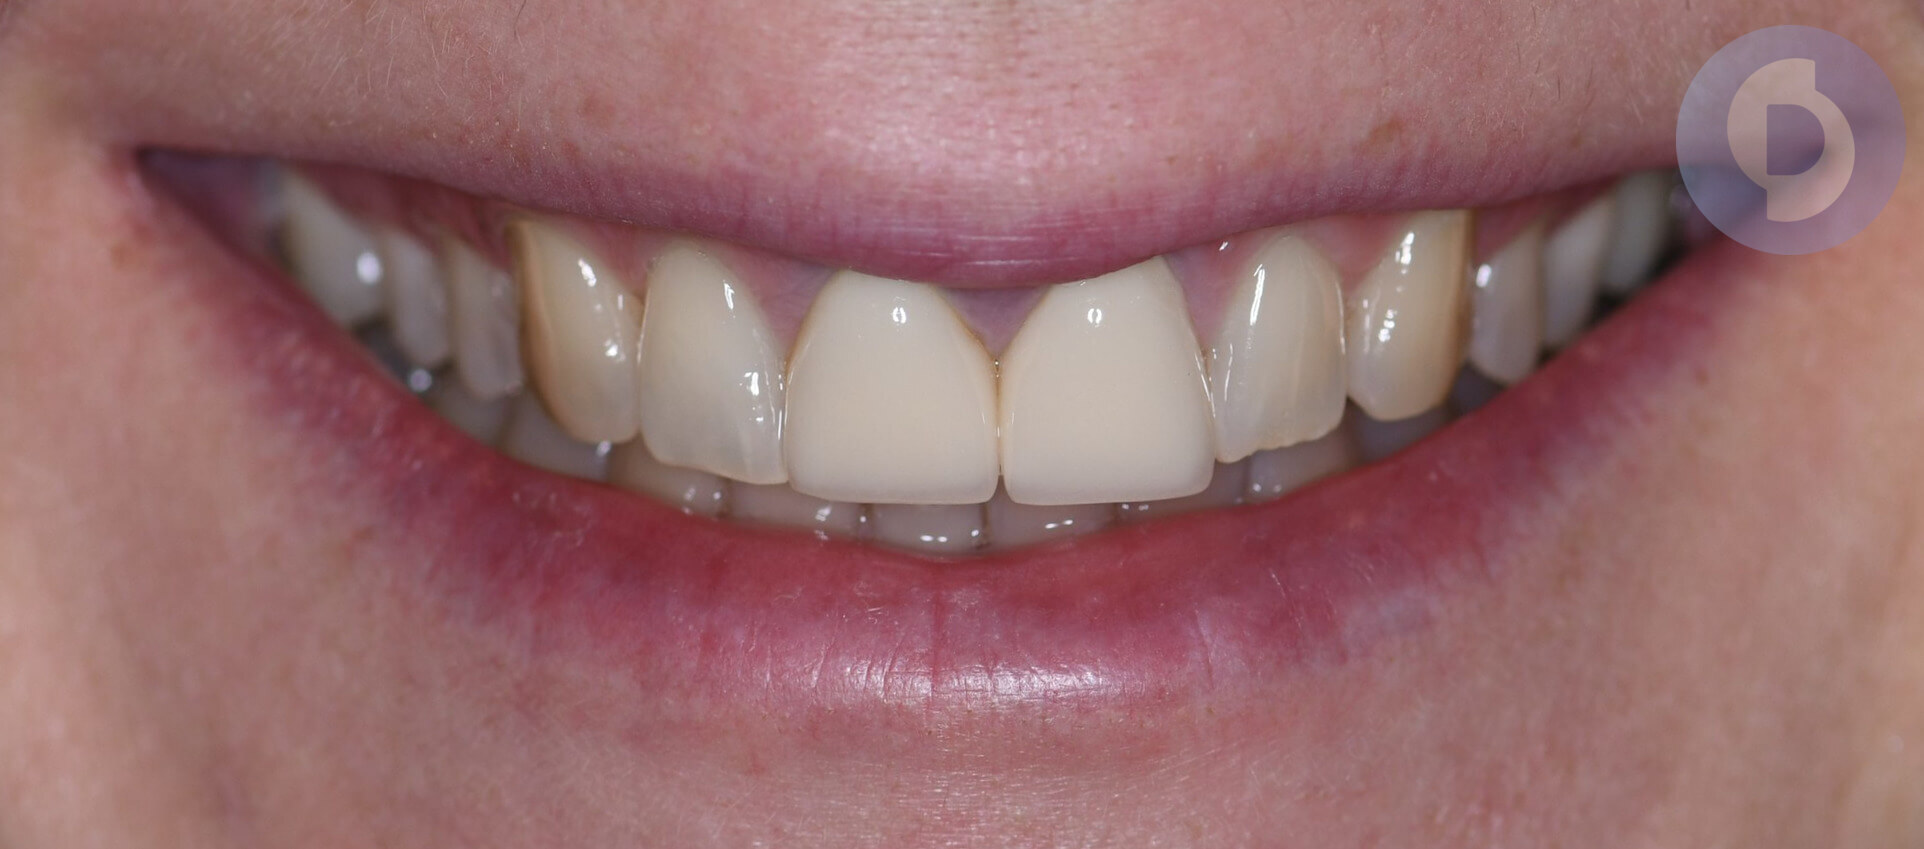 Естетична стоматологія київ, керамічна реставрація, природня посмішка, стоматолог відгуки, реставрація передніх зубів, эстетическая стоматология киев, стоматолог киев отзывы, эстэтическое протезирование, керамика зубы киев отзывы